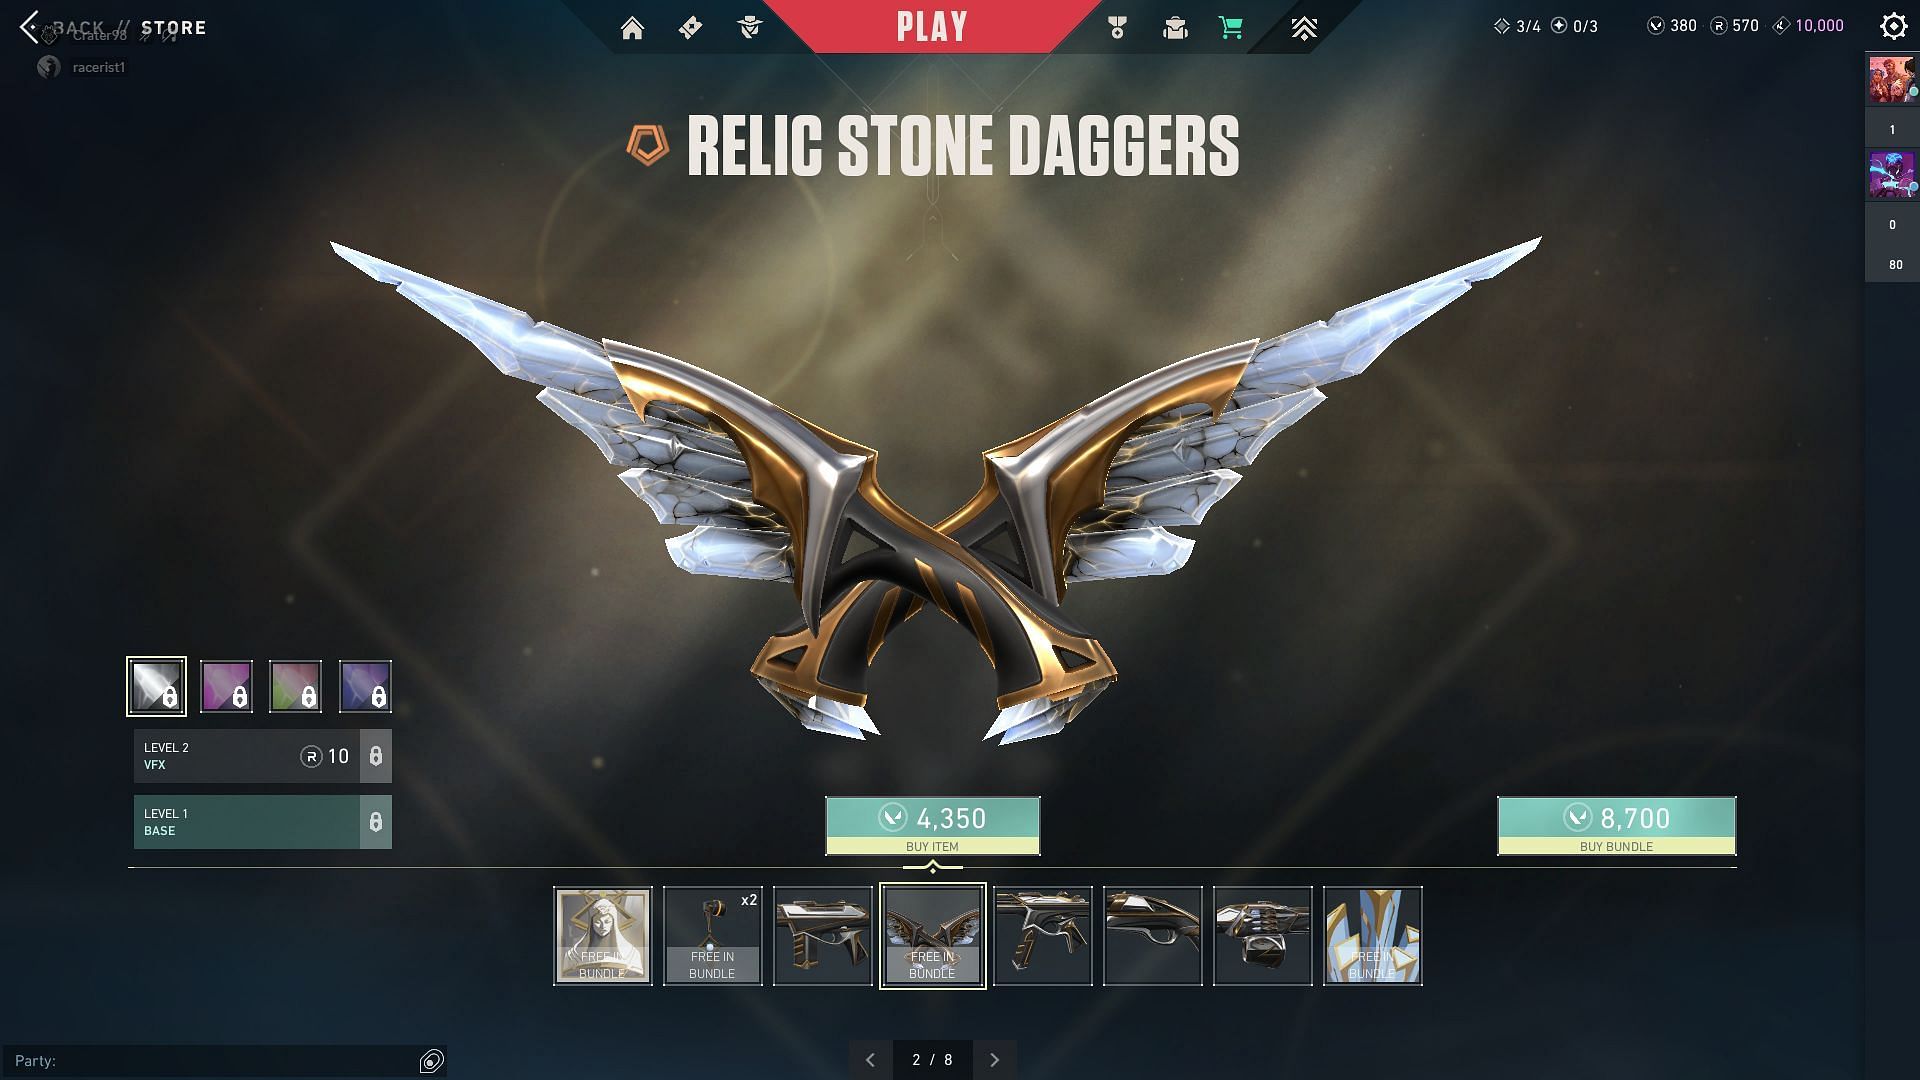 Relic Stone Daggers (Image via Riot Games)